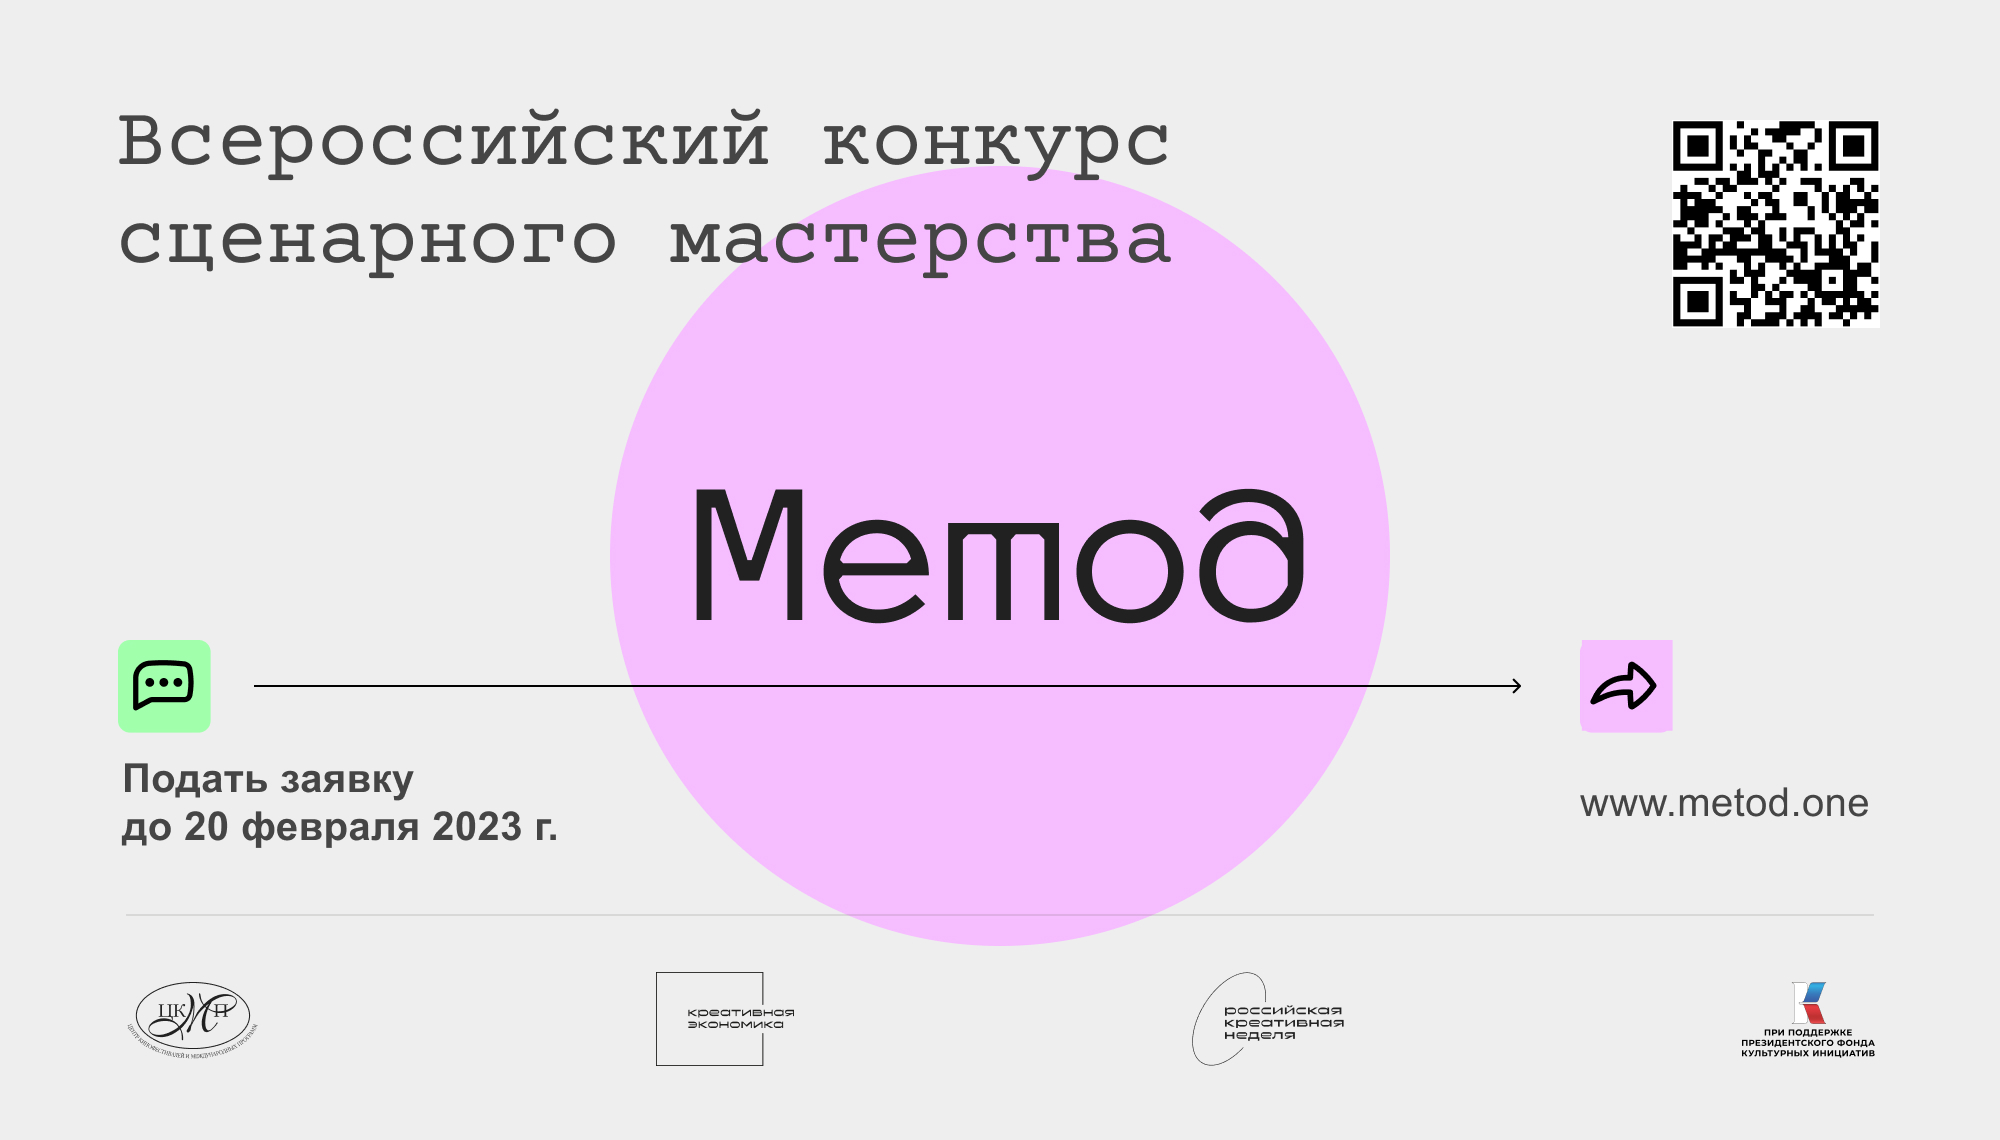 Всероссийский конкурс сценарного мастерства в рамках Образовательного проекта «Метод» открыл приём заявок